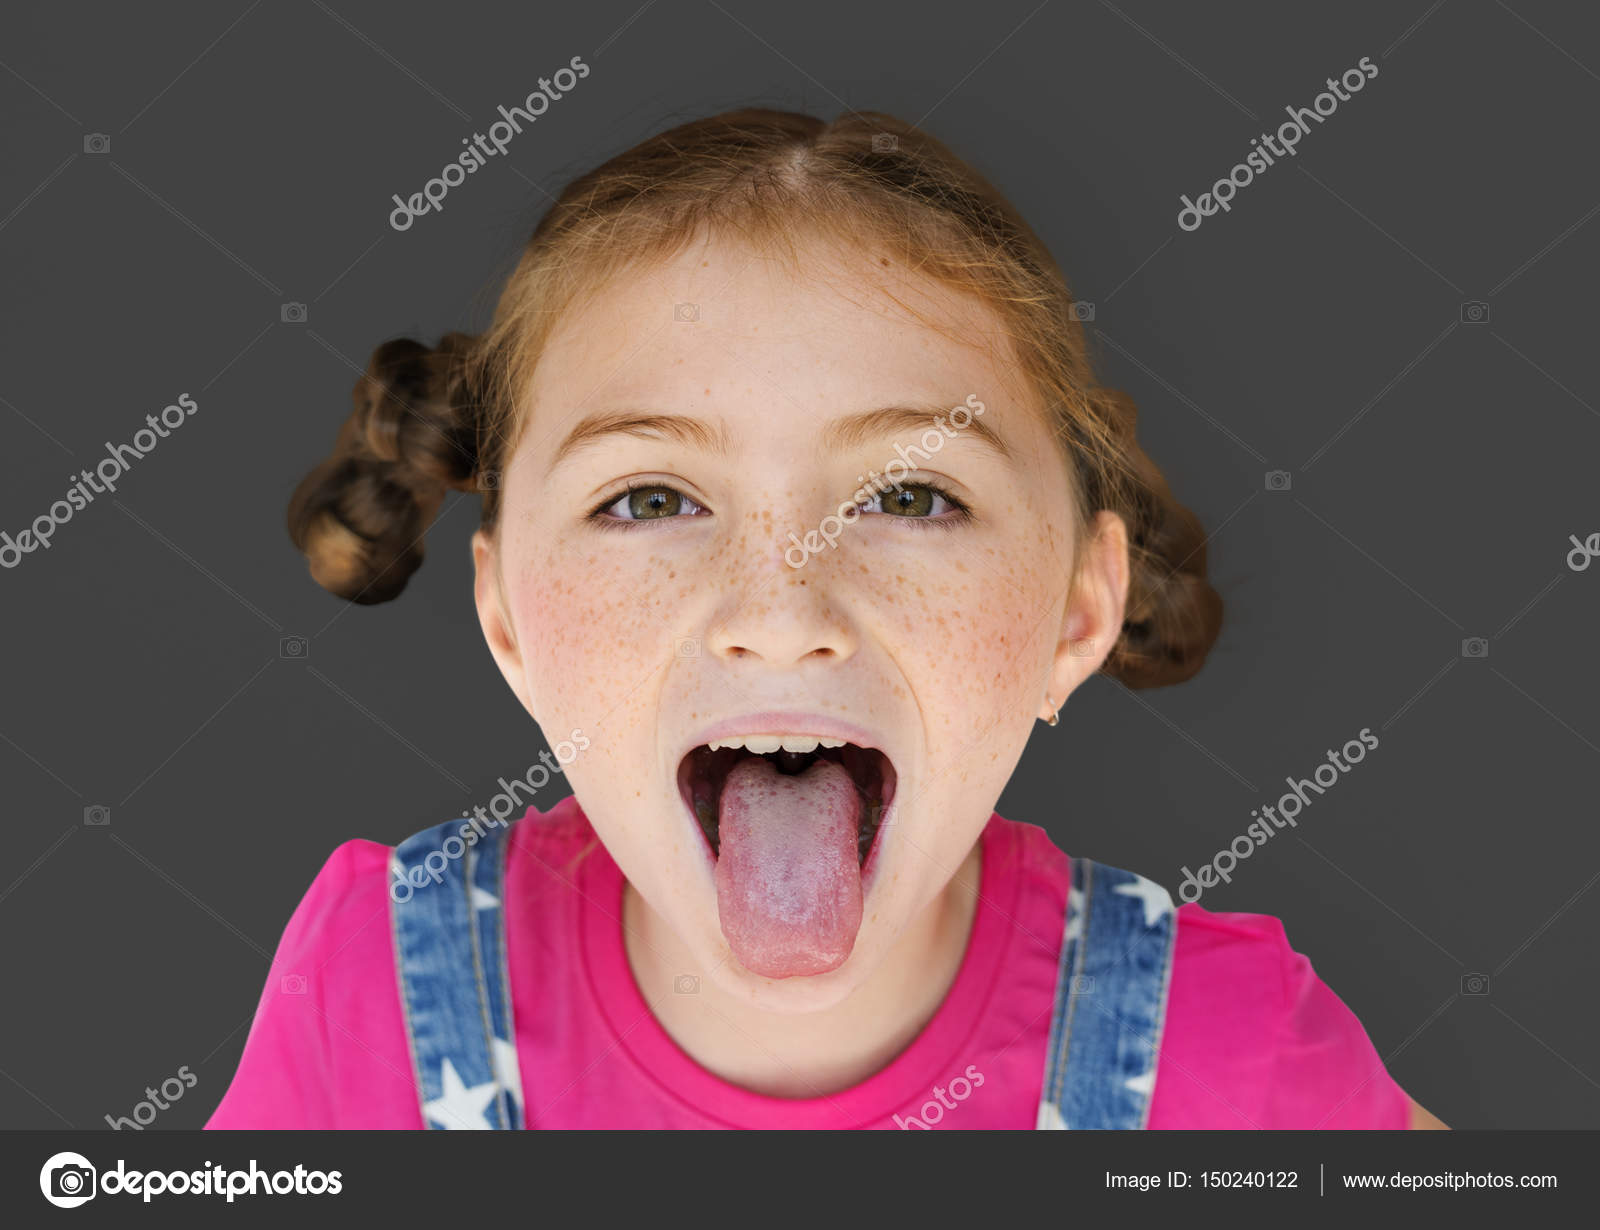 Sister mouth. Дети с открытым ртом и высунутым языком. Маленькая девочка открыла рот и высунула язык. Девочка открыла рот. Девушка с высунутым языком.